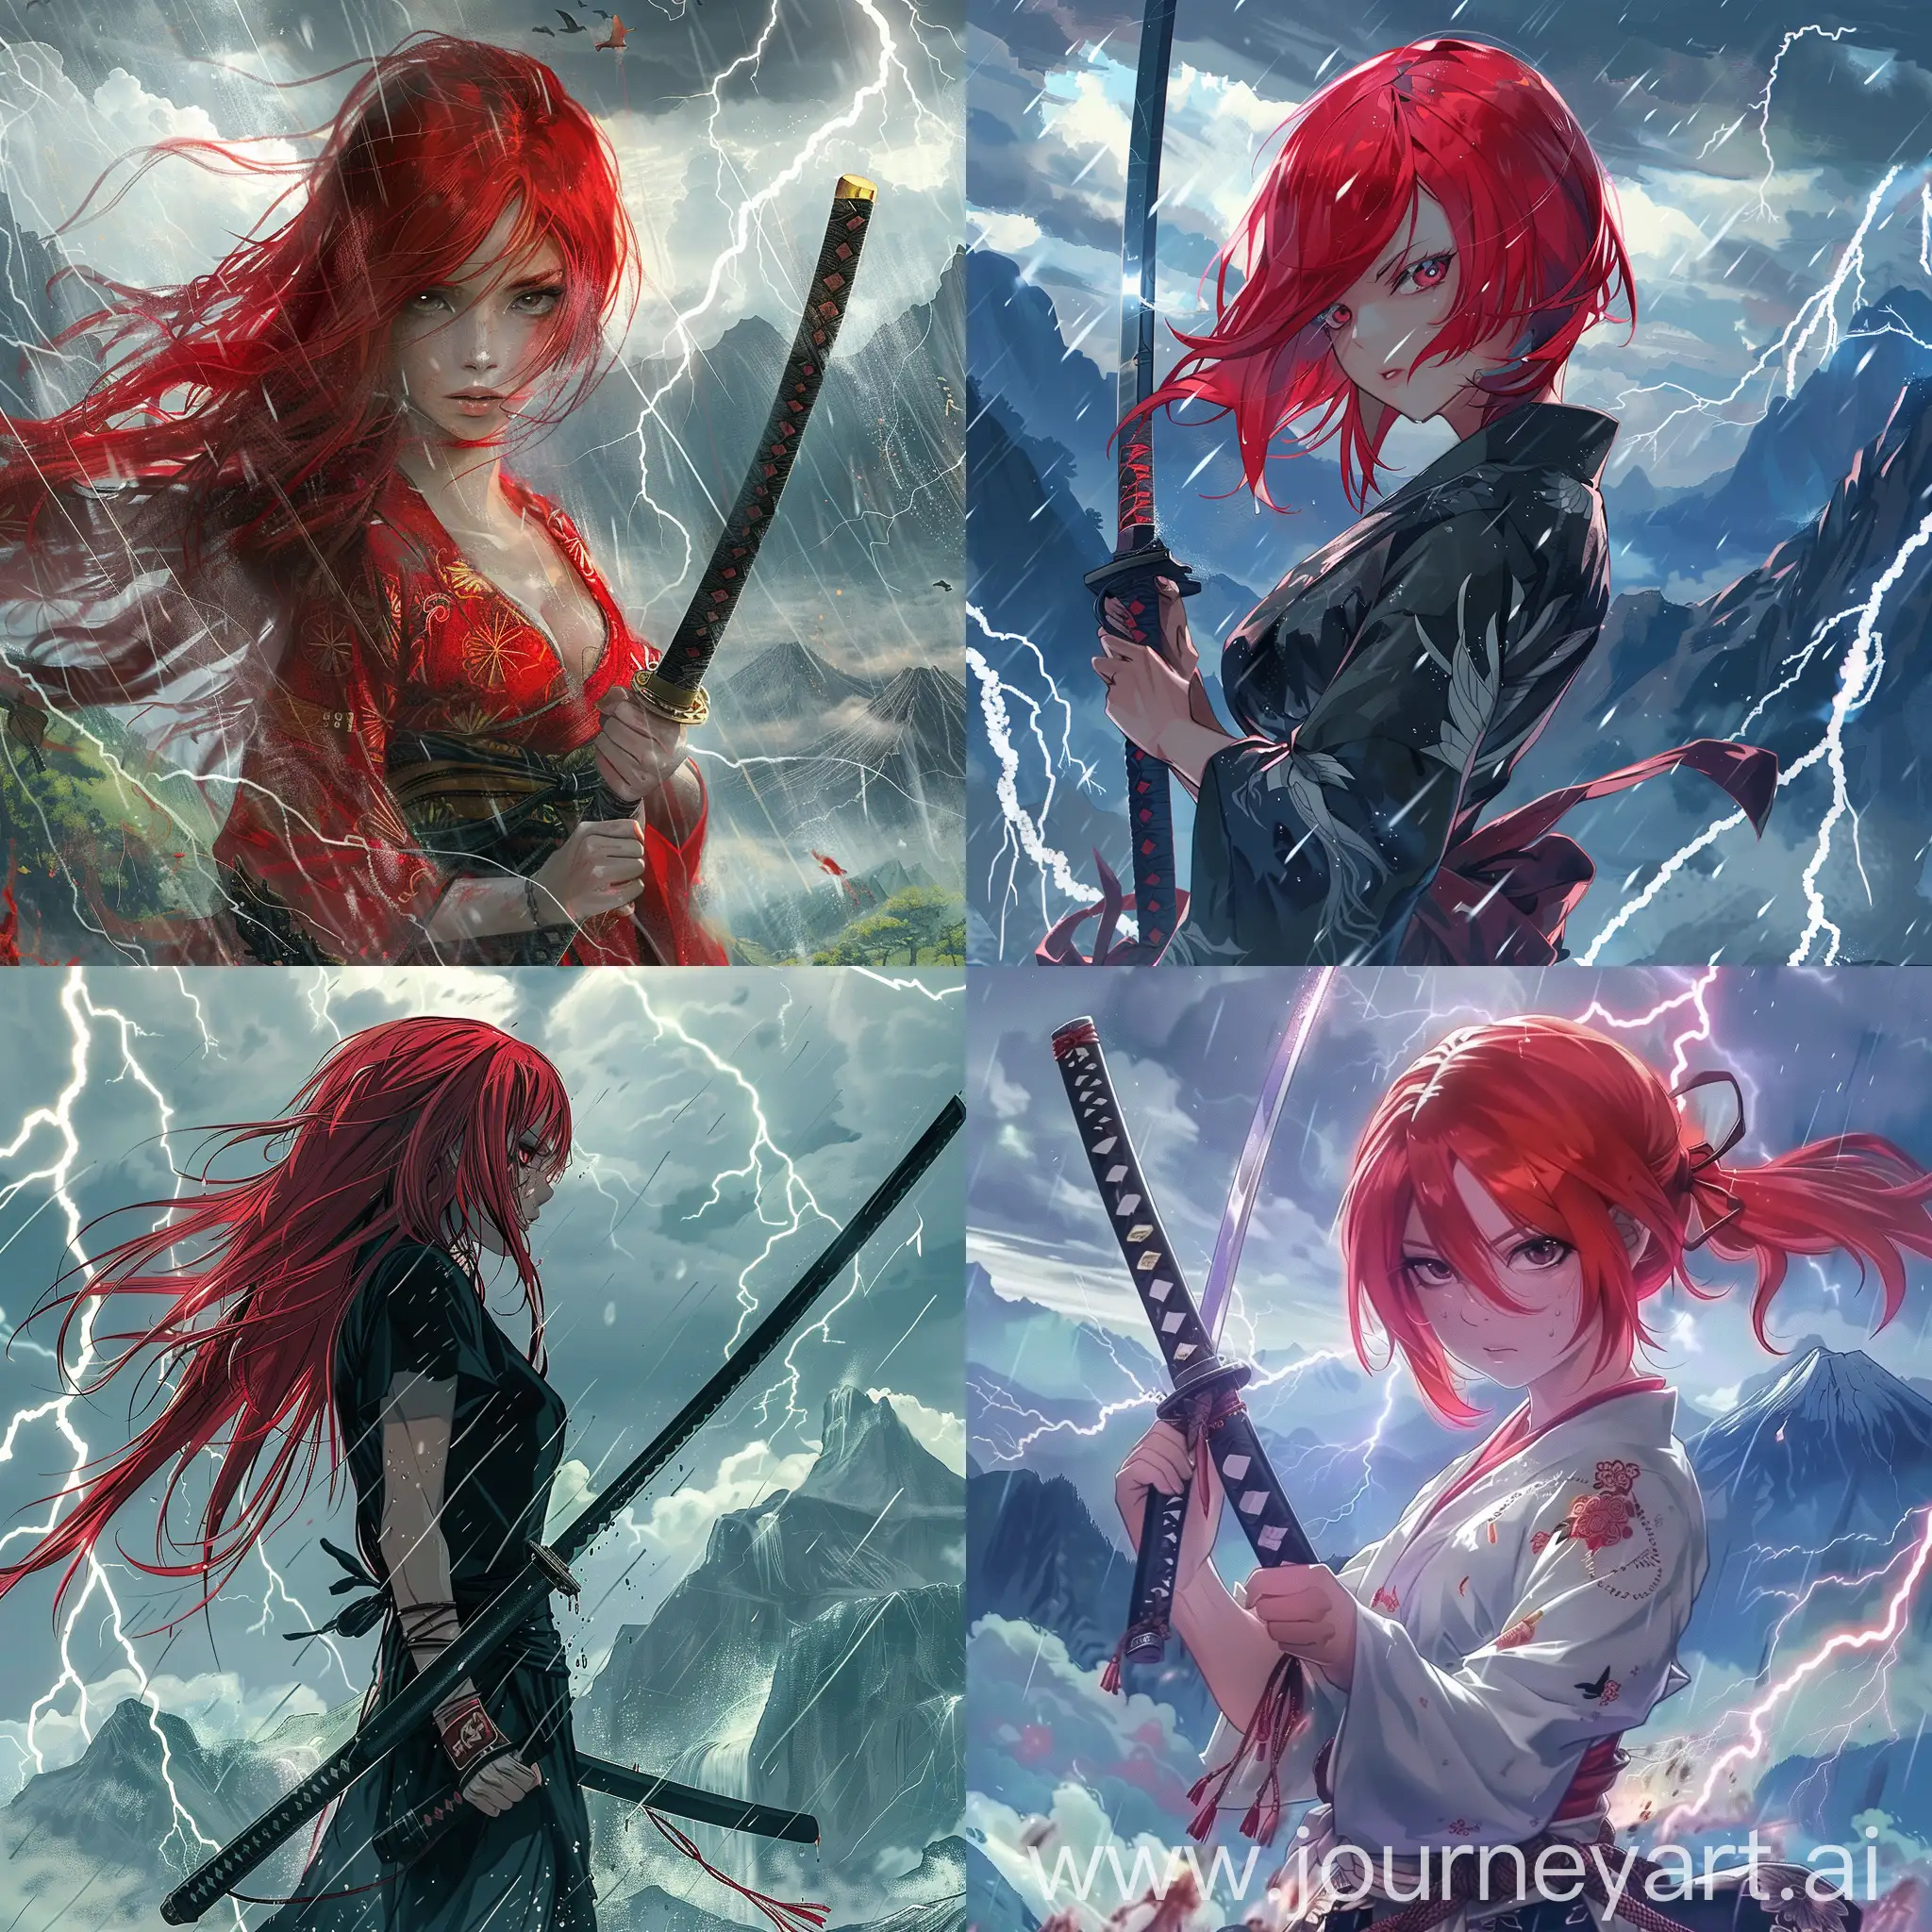 Аниме девушка с красными волосами с катаной в руках на фоне гор и грозы, молний.